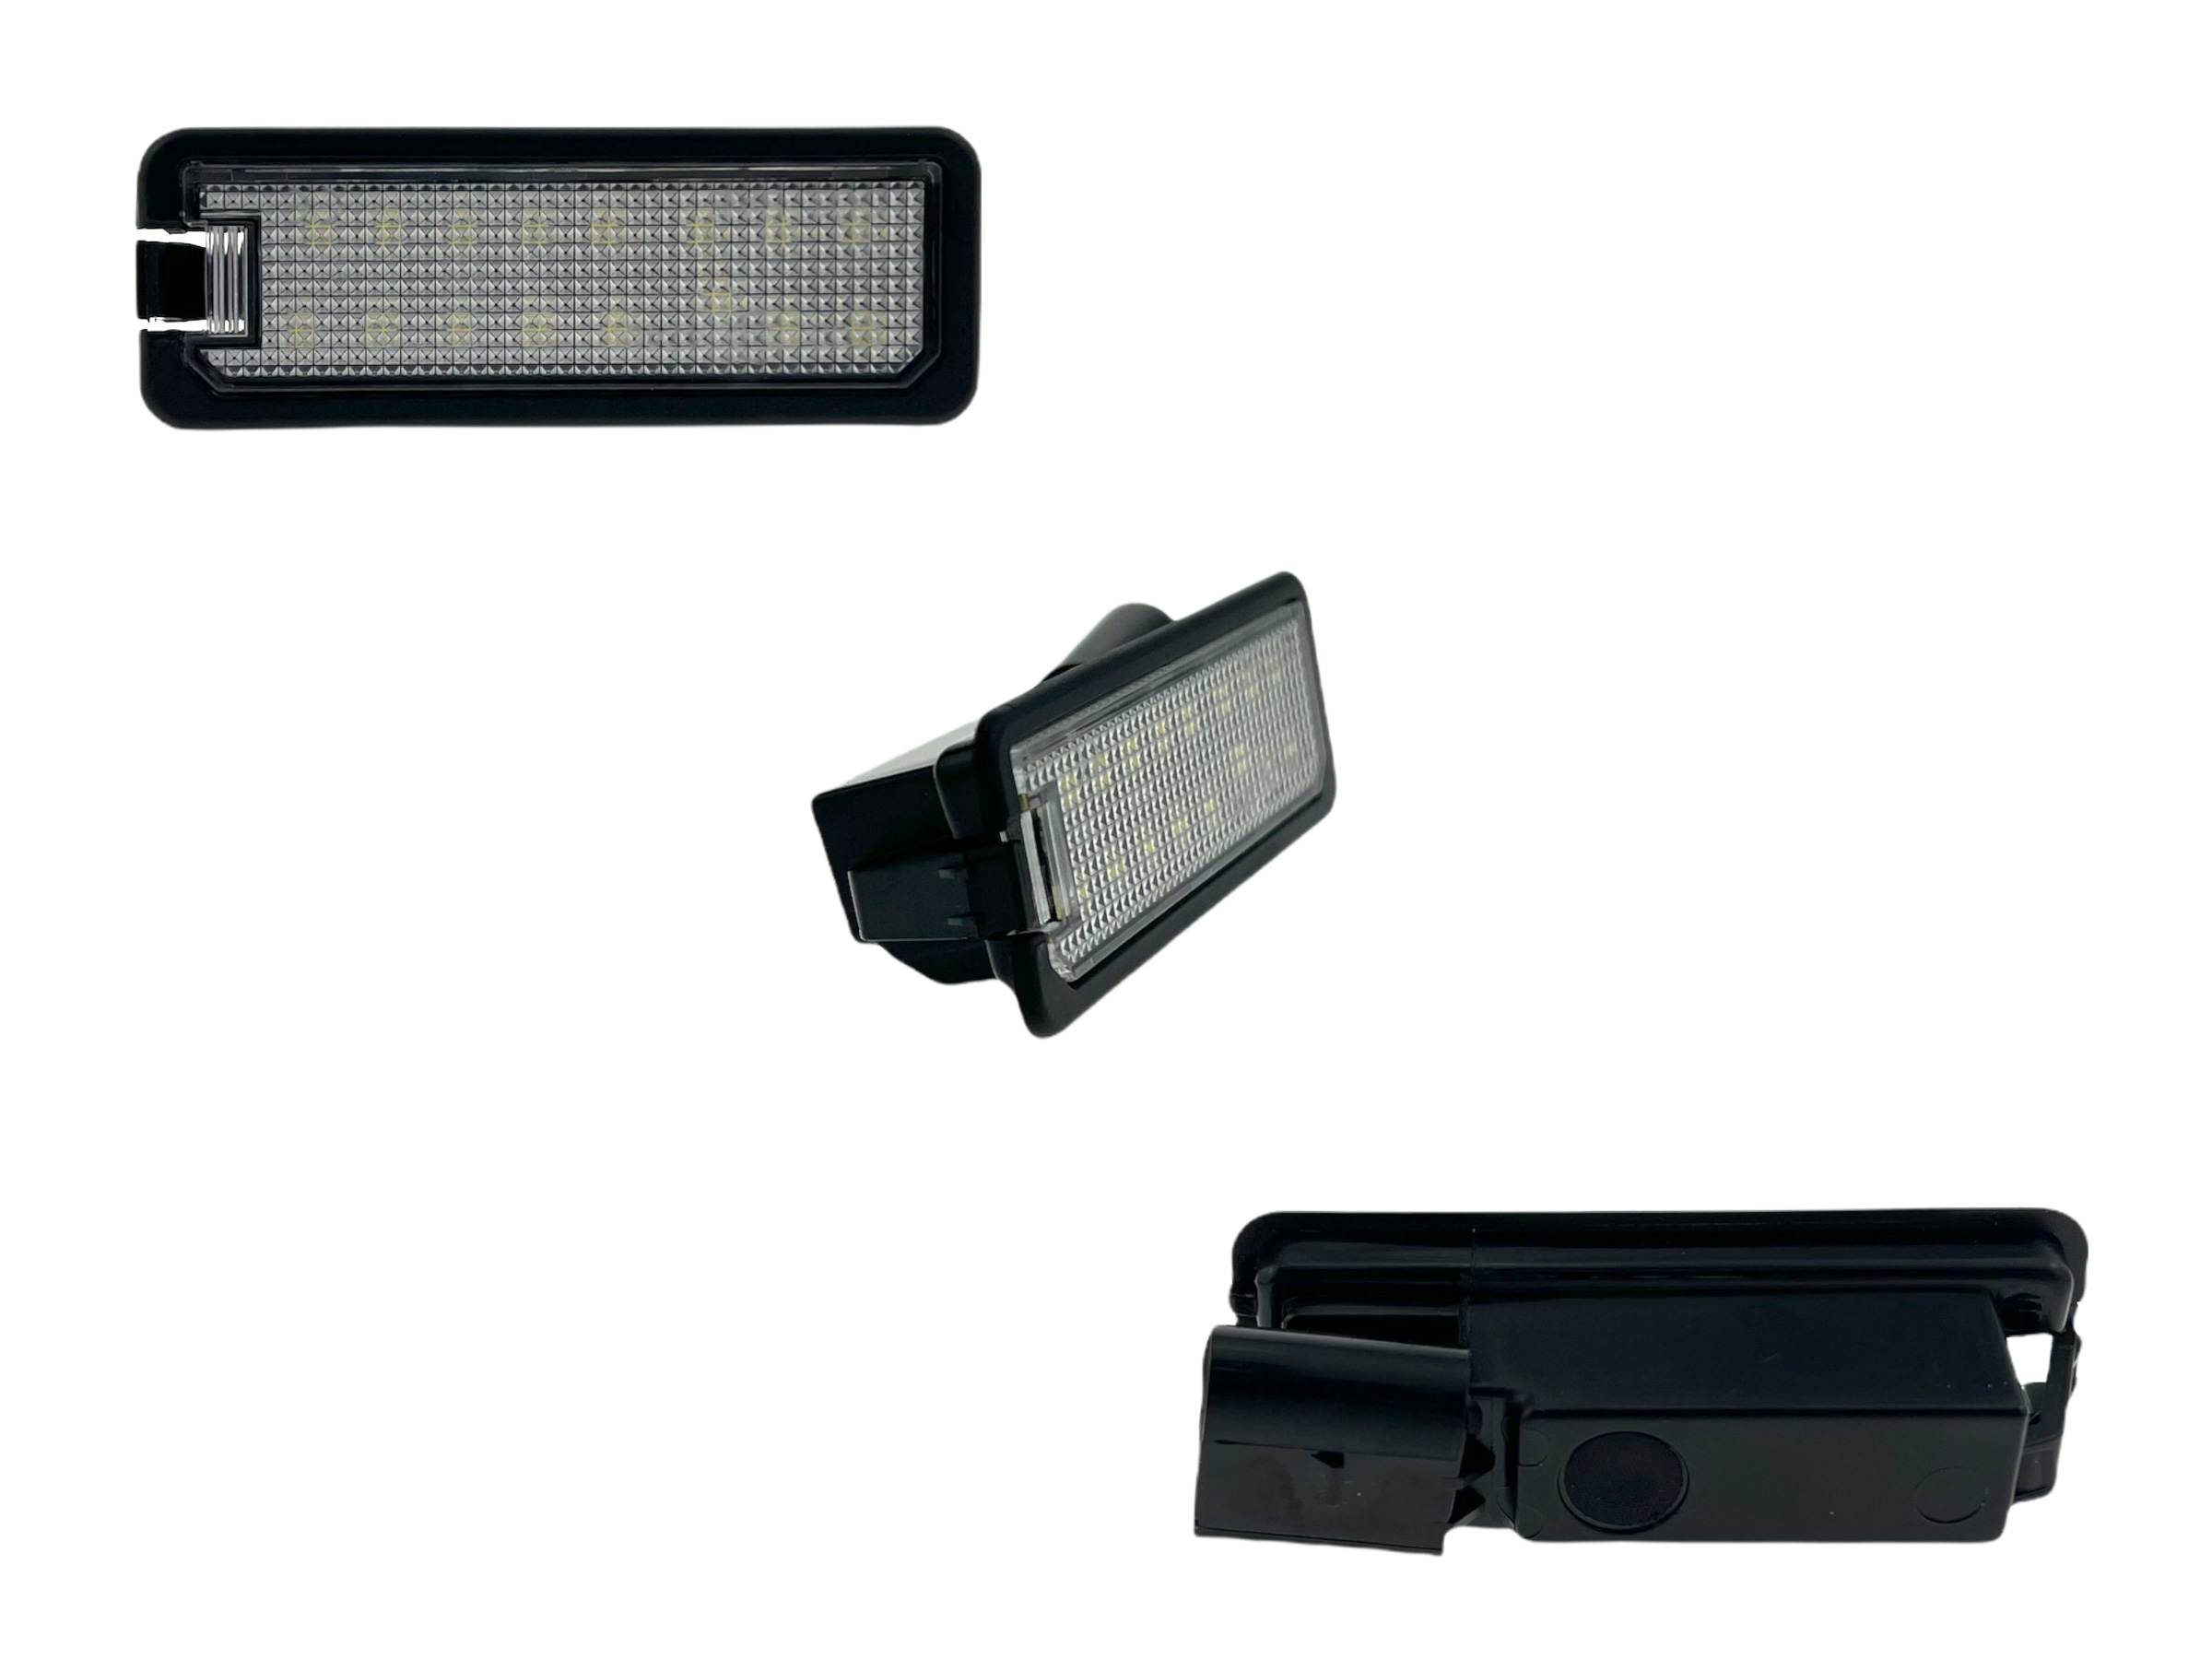 Kennzeichenbeleuchtung für Seat Ibiza 6J LED und Halogen kaufen - Original  Qualität und günstige Preise bei AUTODOC